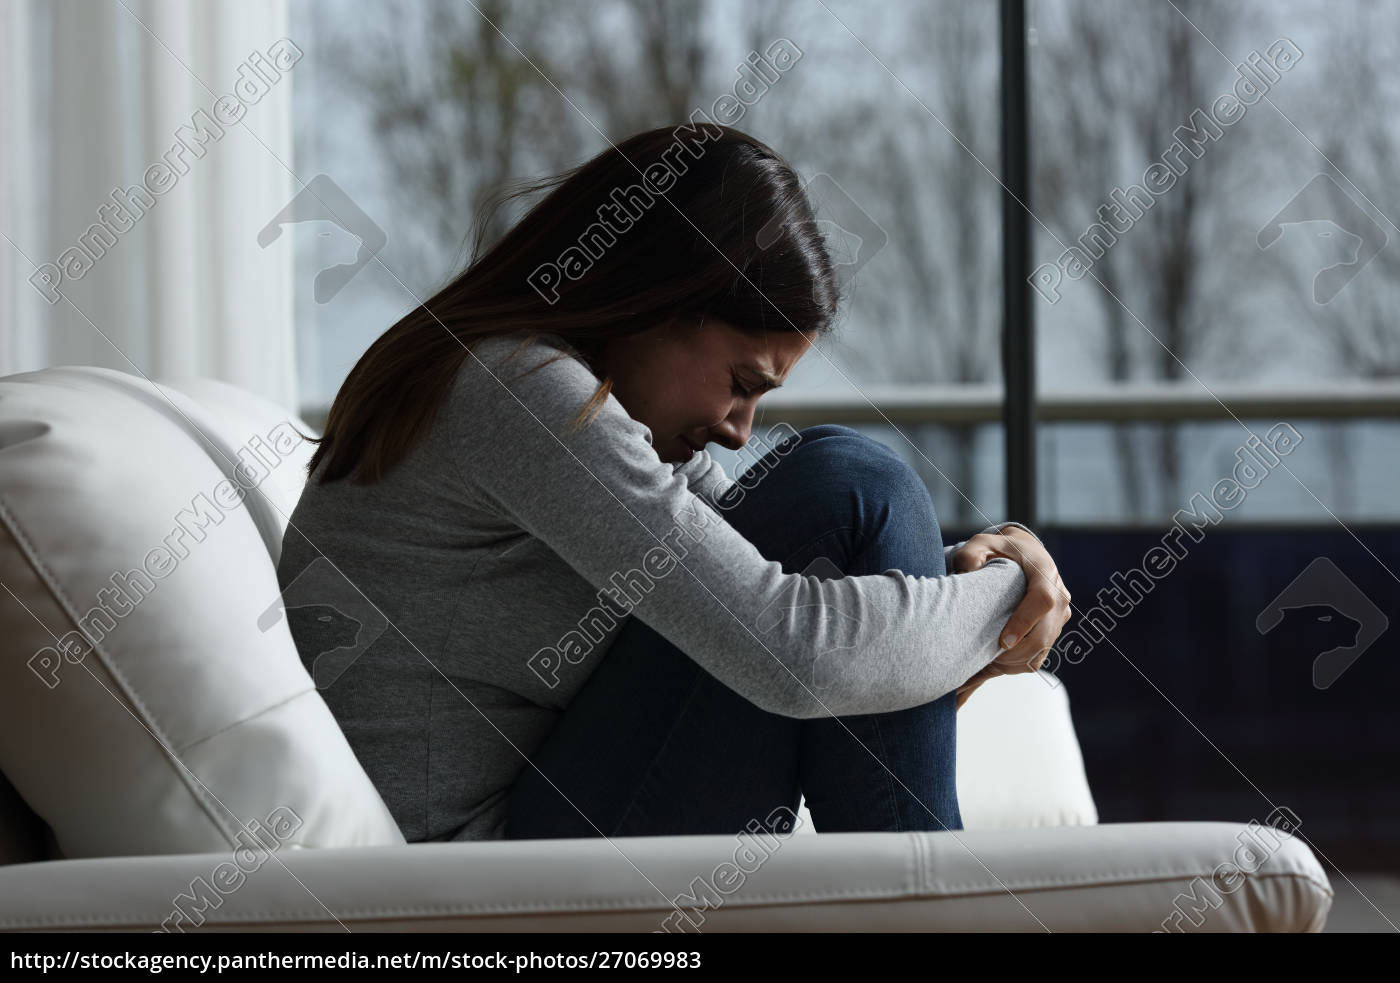 Depressão, tristeza, menina chorando imagem vetorial de  tomozina1.yandex.ru© 313662170